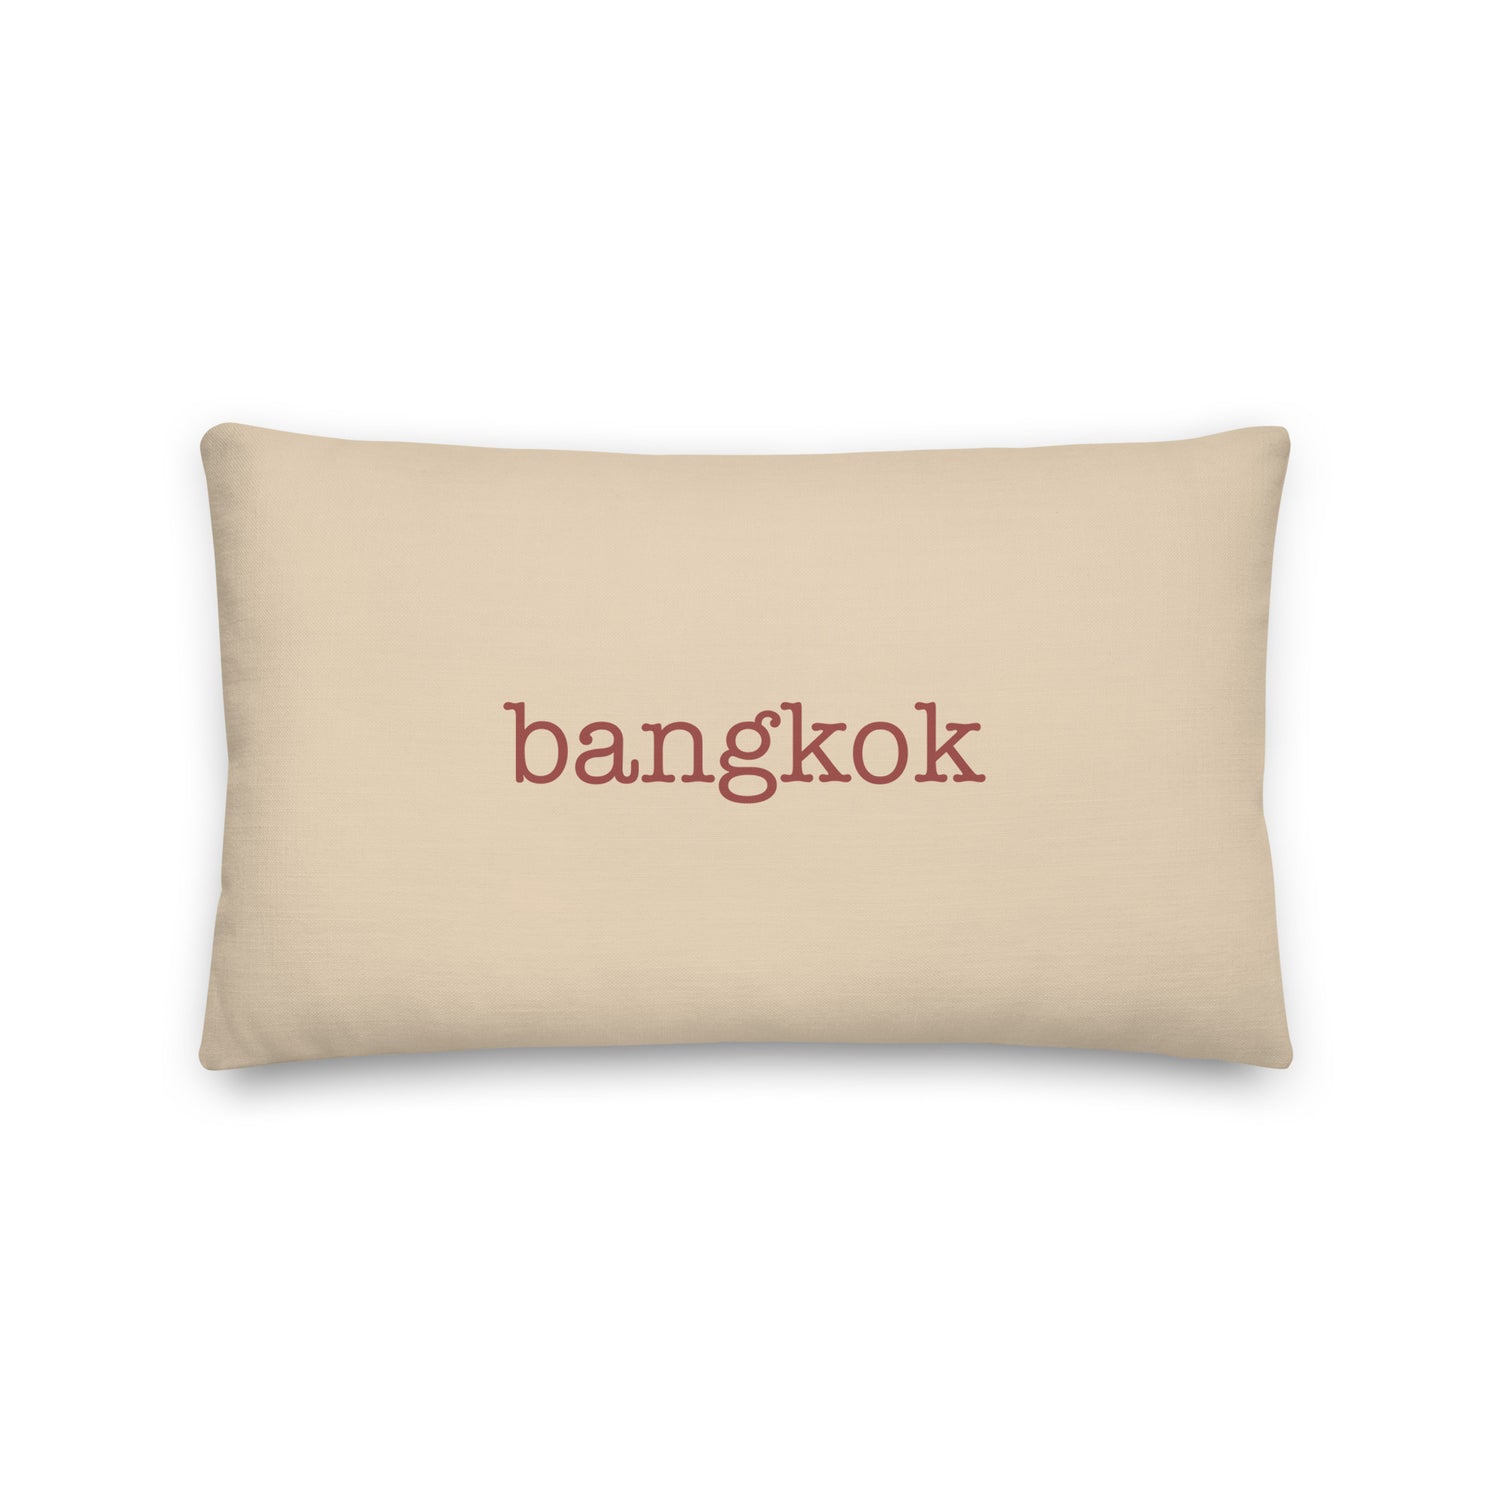 Bangkok Thailand Pillows and Blankets • BKK Airport Code